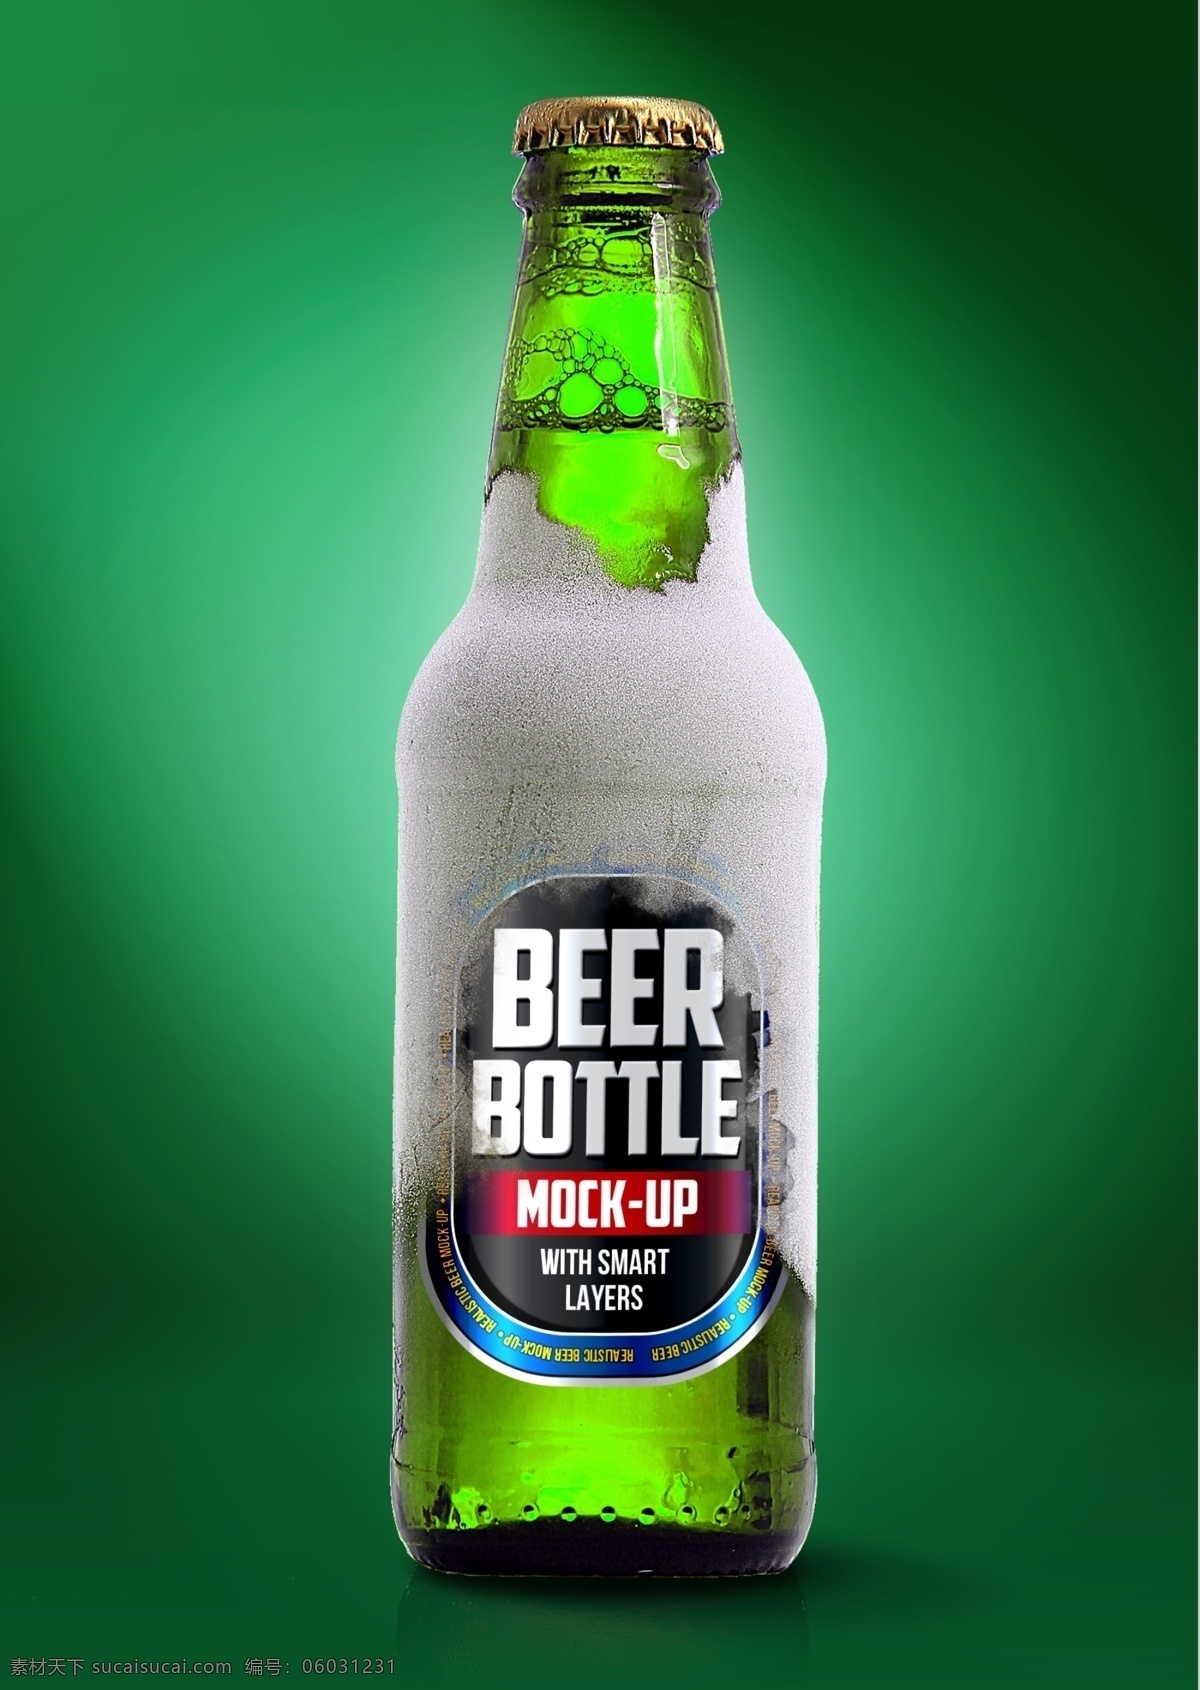 啤酒瓶贴 智能对象 vi提案神器 样机 啤酒 瓶贴 包装 模板 psd分层 绿色